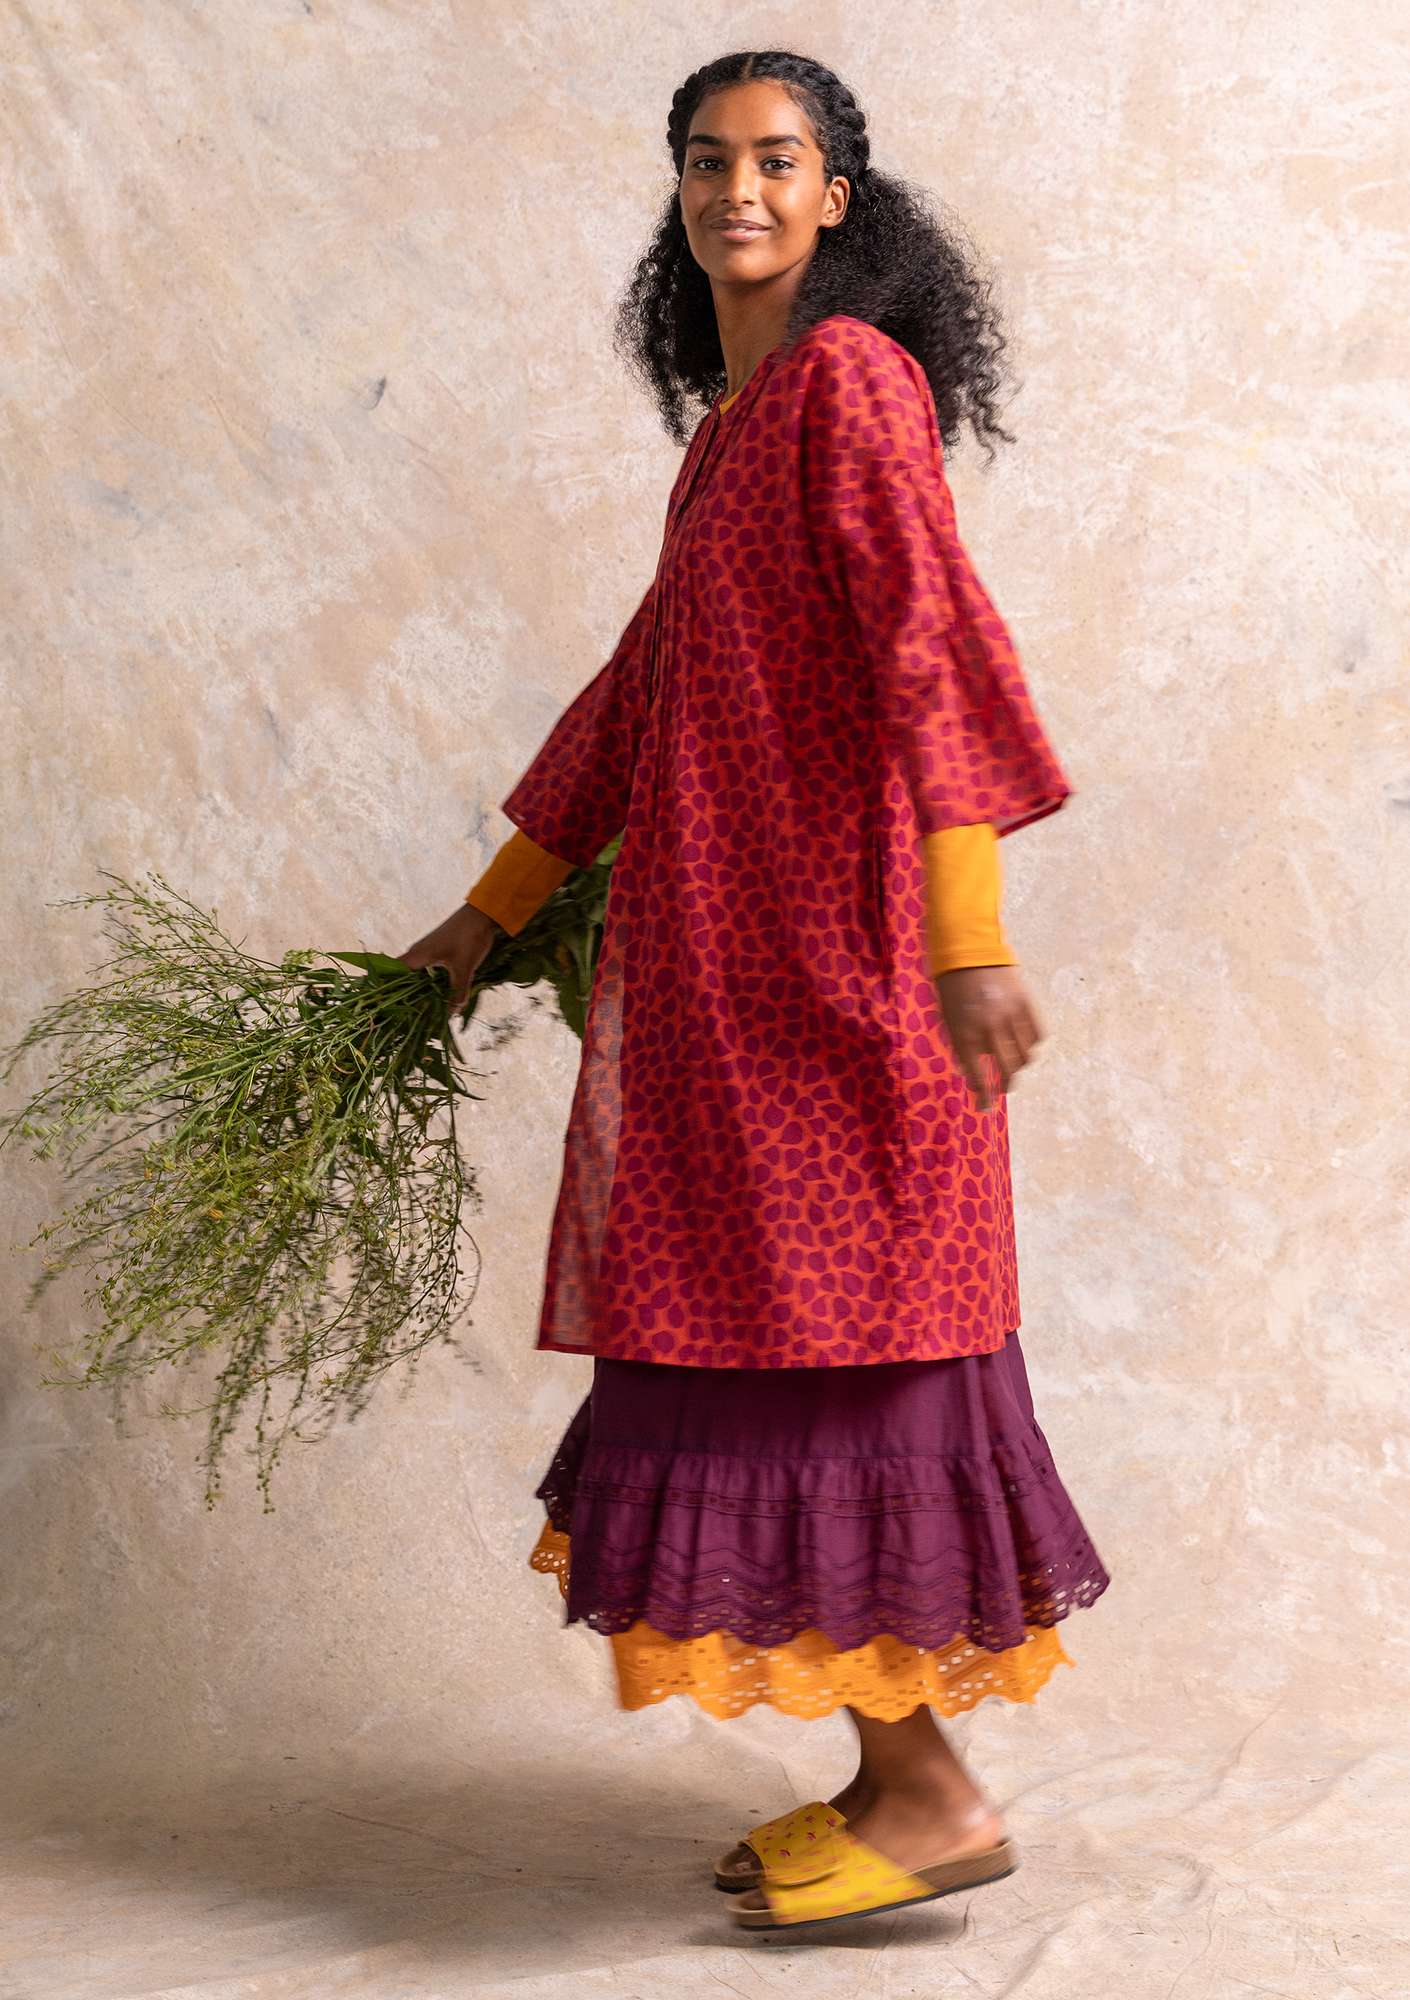 Vevd kjole «Serafina» i økologisk bomull papegøyerød/mønstret thumbnail